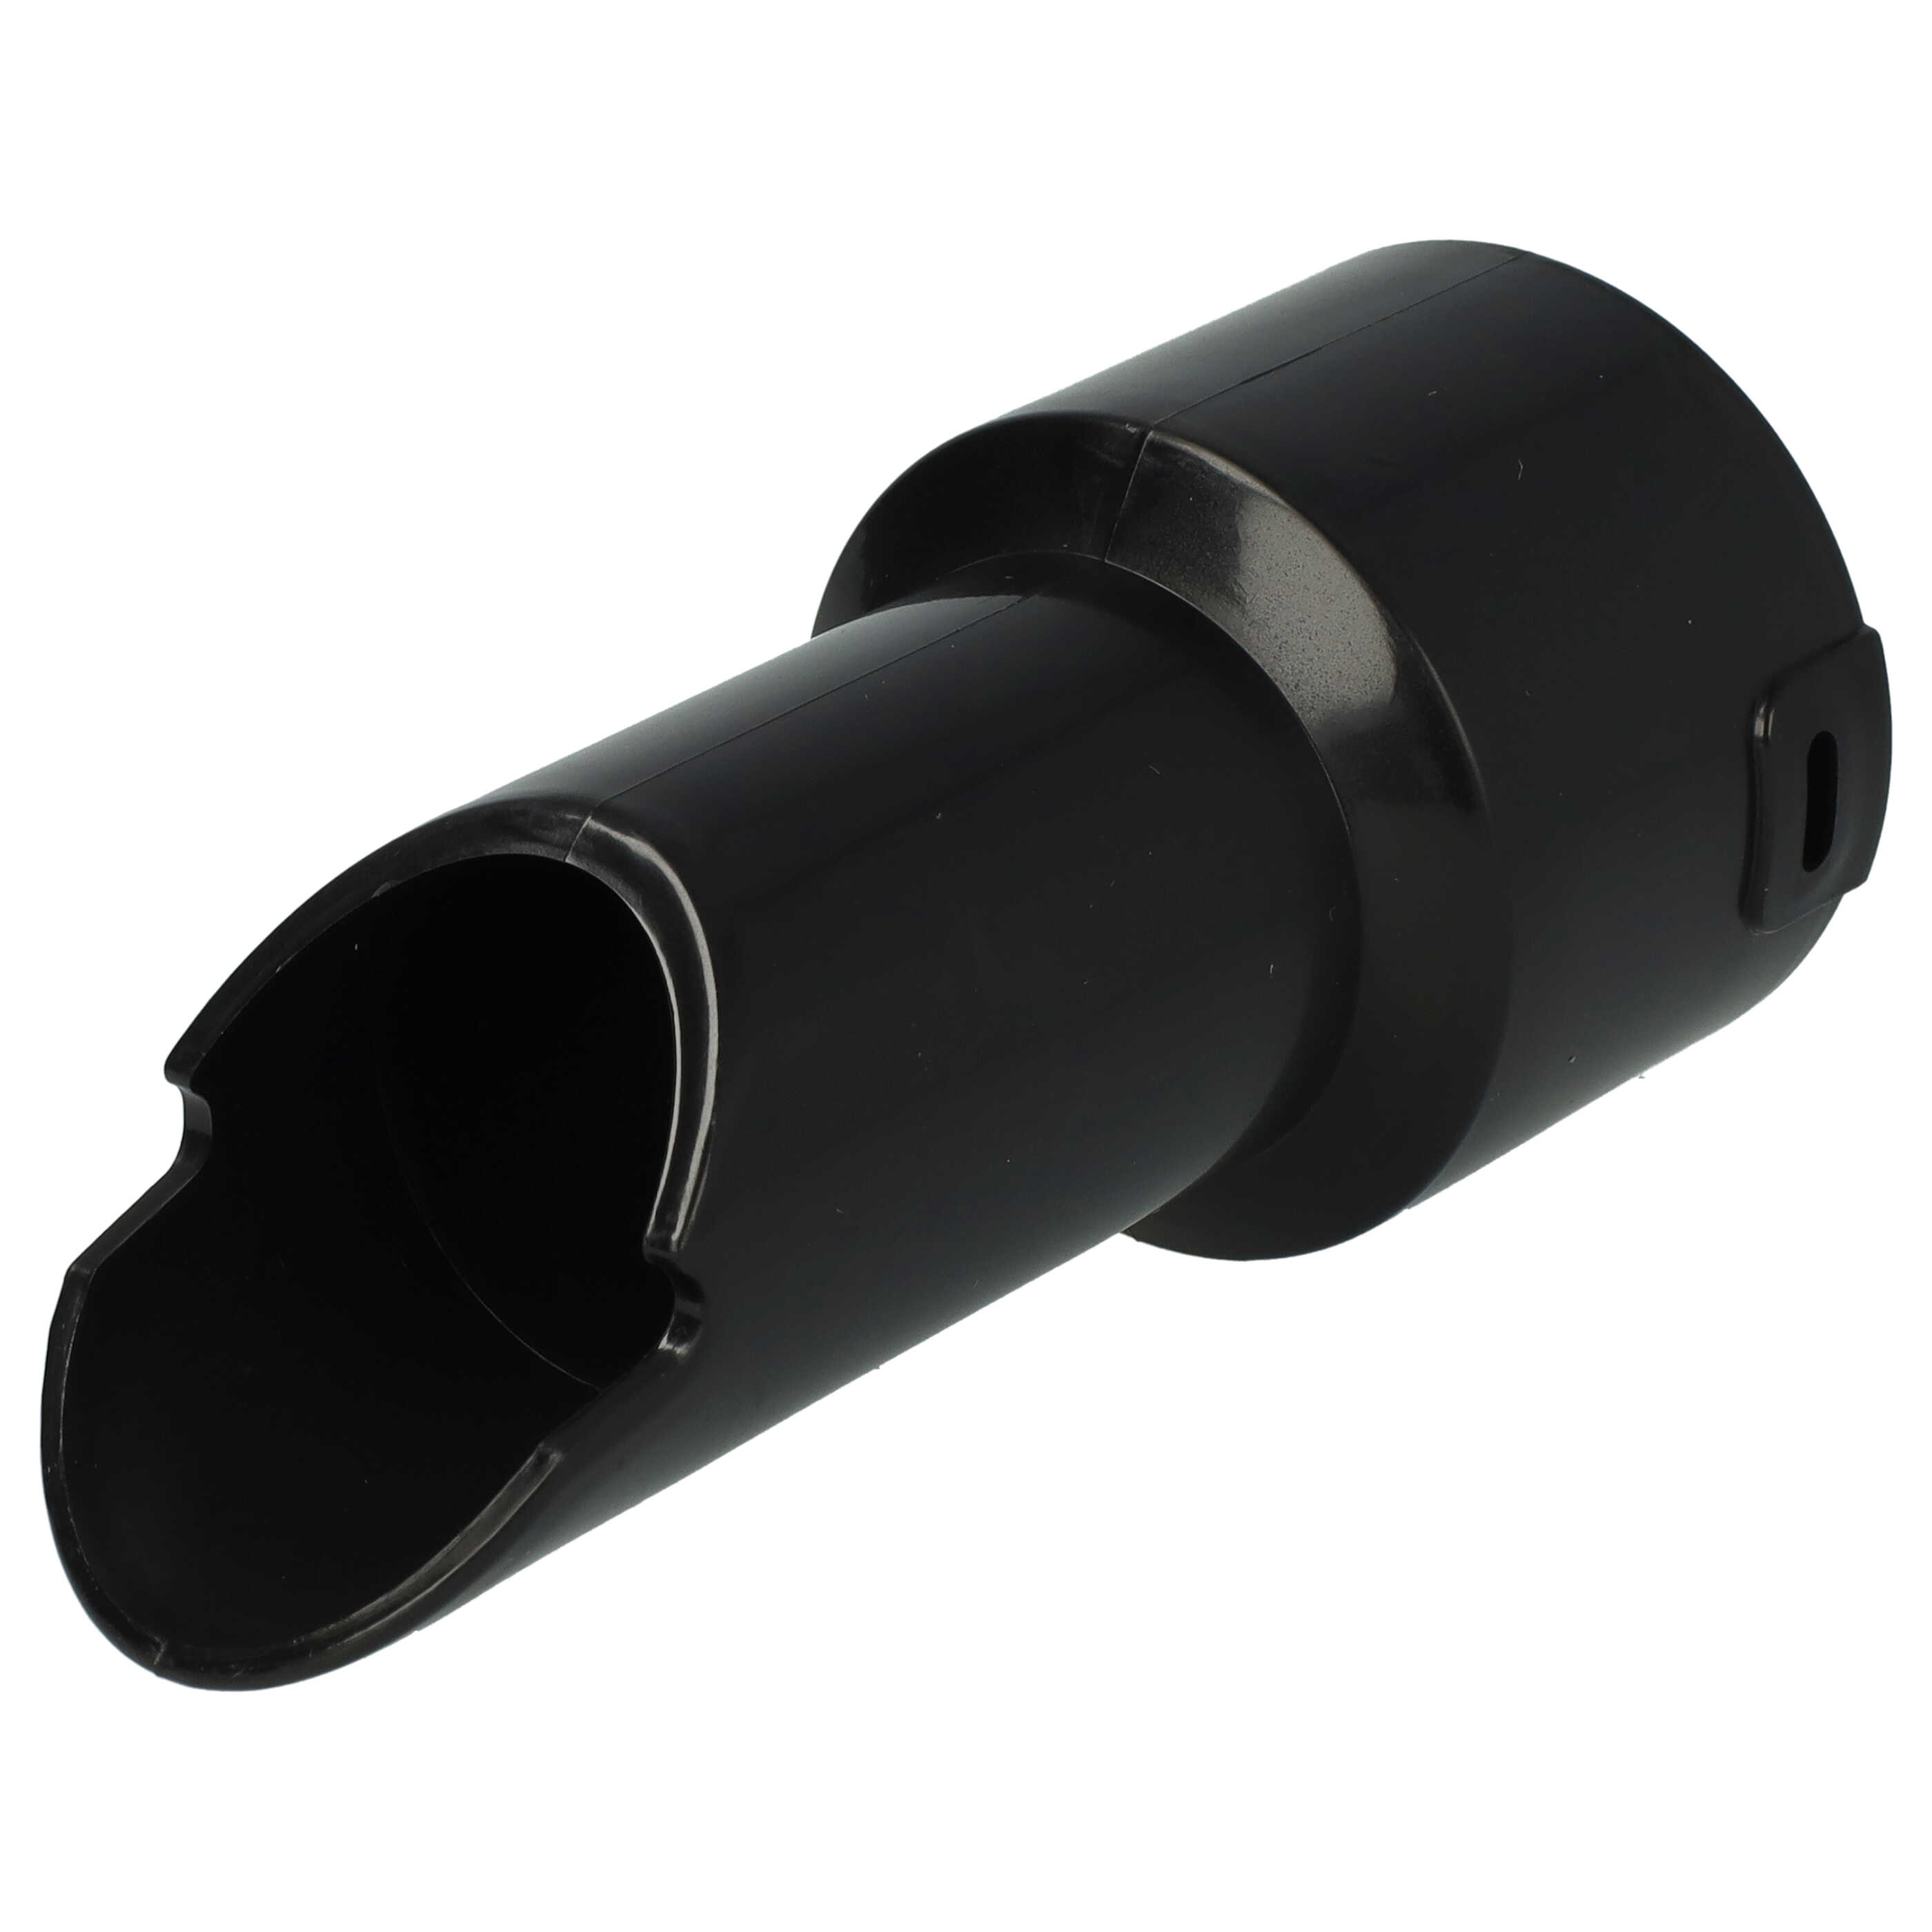 Schlauch-Adapter für NBV190/1 Numatic Staubsauger - 32 mm Rundanschluss, Klick-System